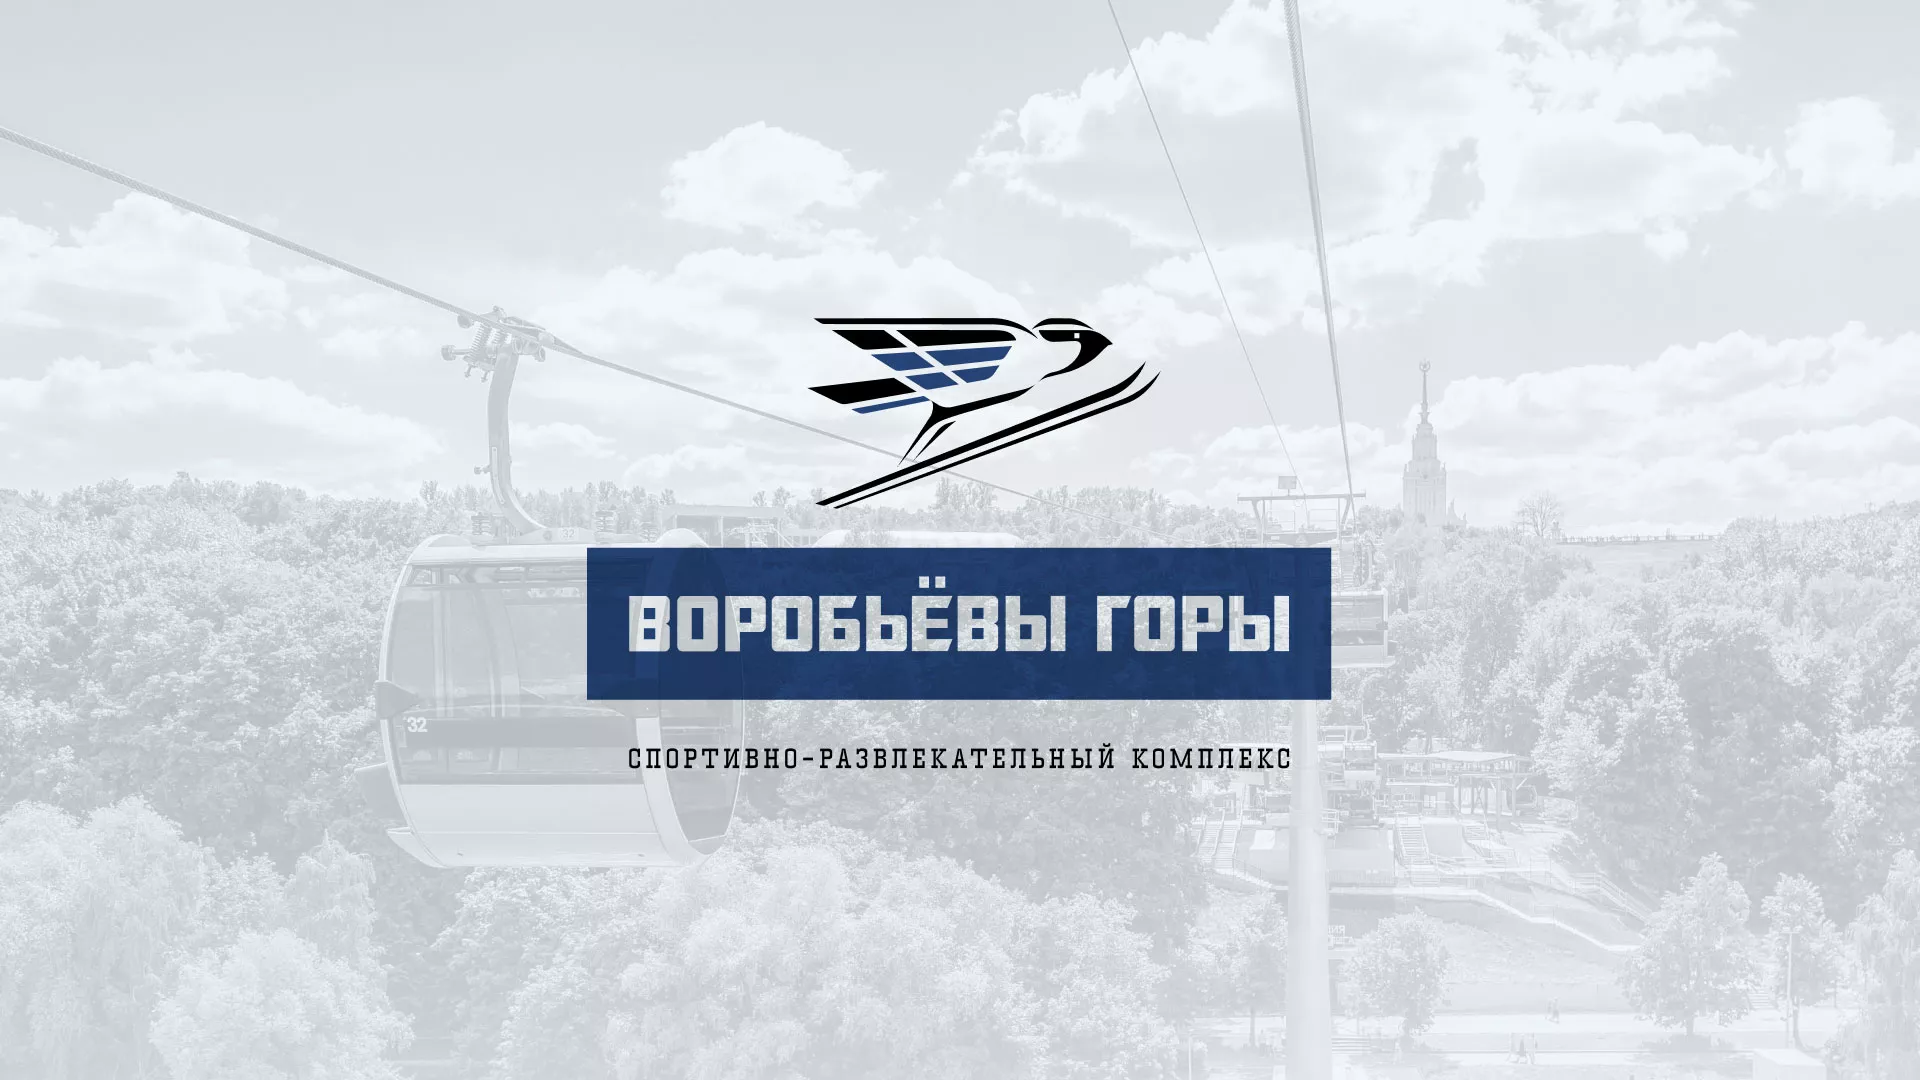 Разработка сайта в Тольятти для спортивно-развлекательного комплекса «Воробьёвы горы»